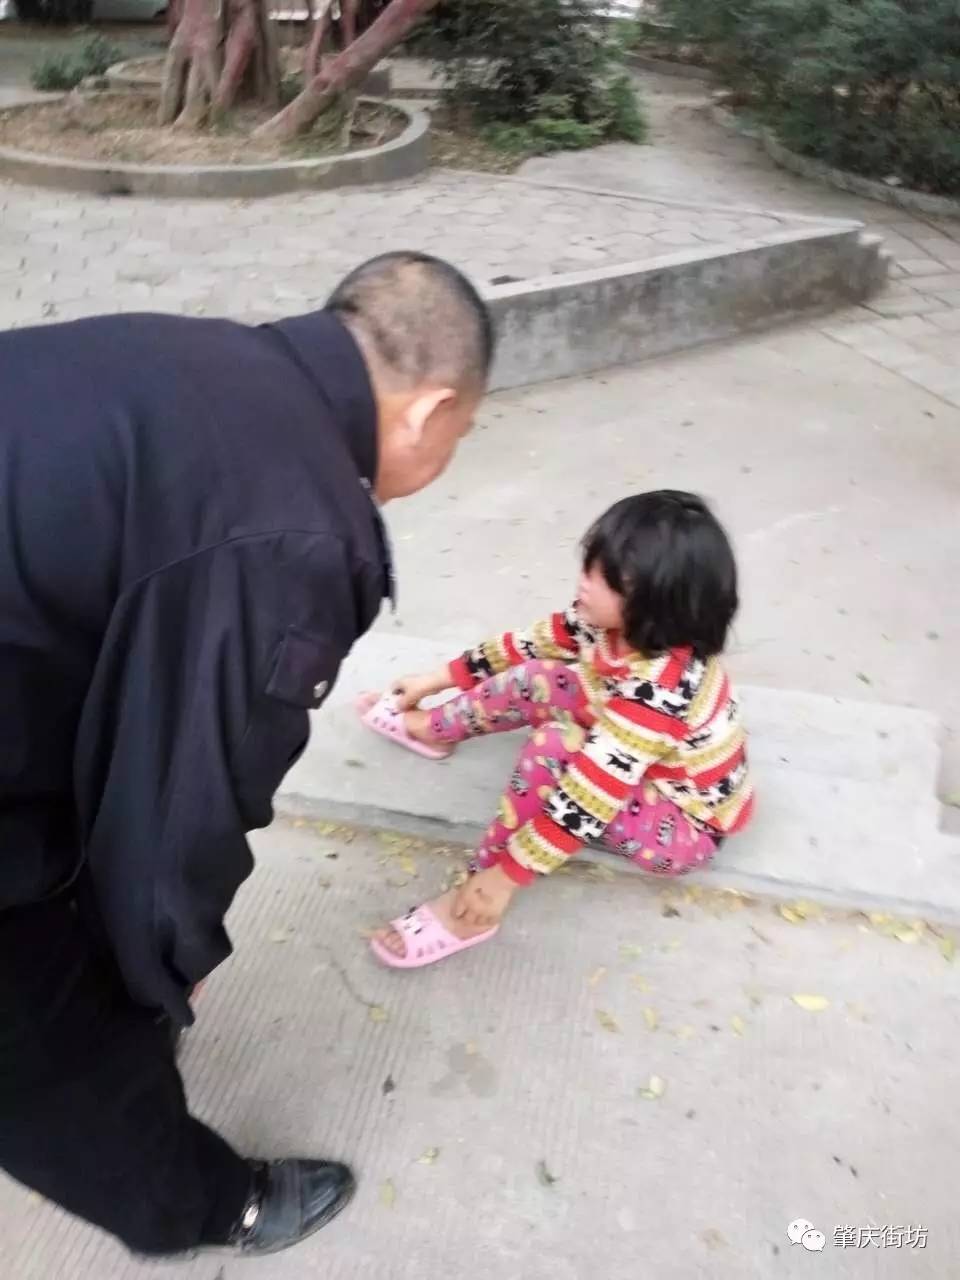 肇庆河旁市场一小女孩坐在路边大哭,所谓何事?